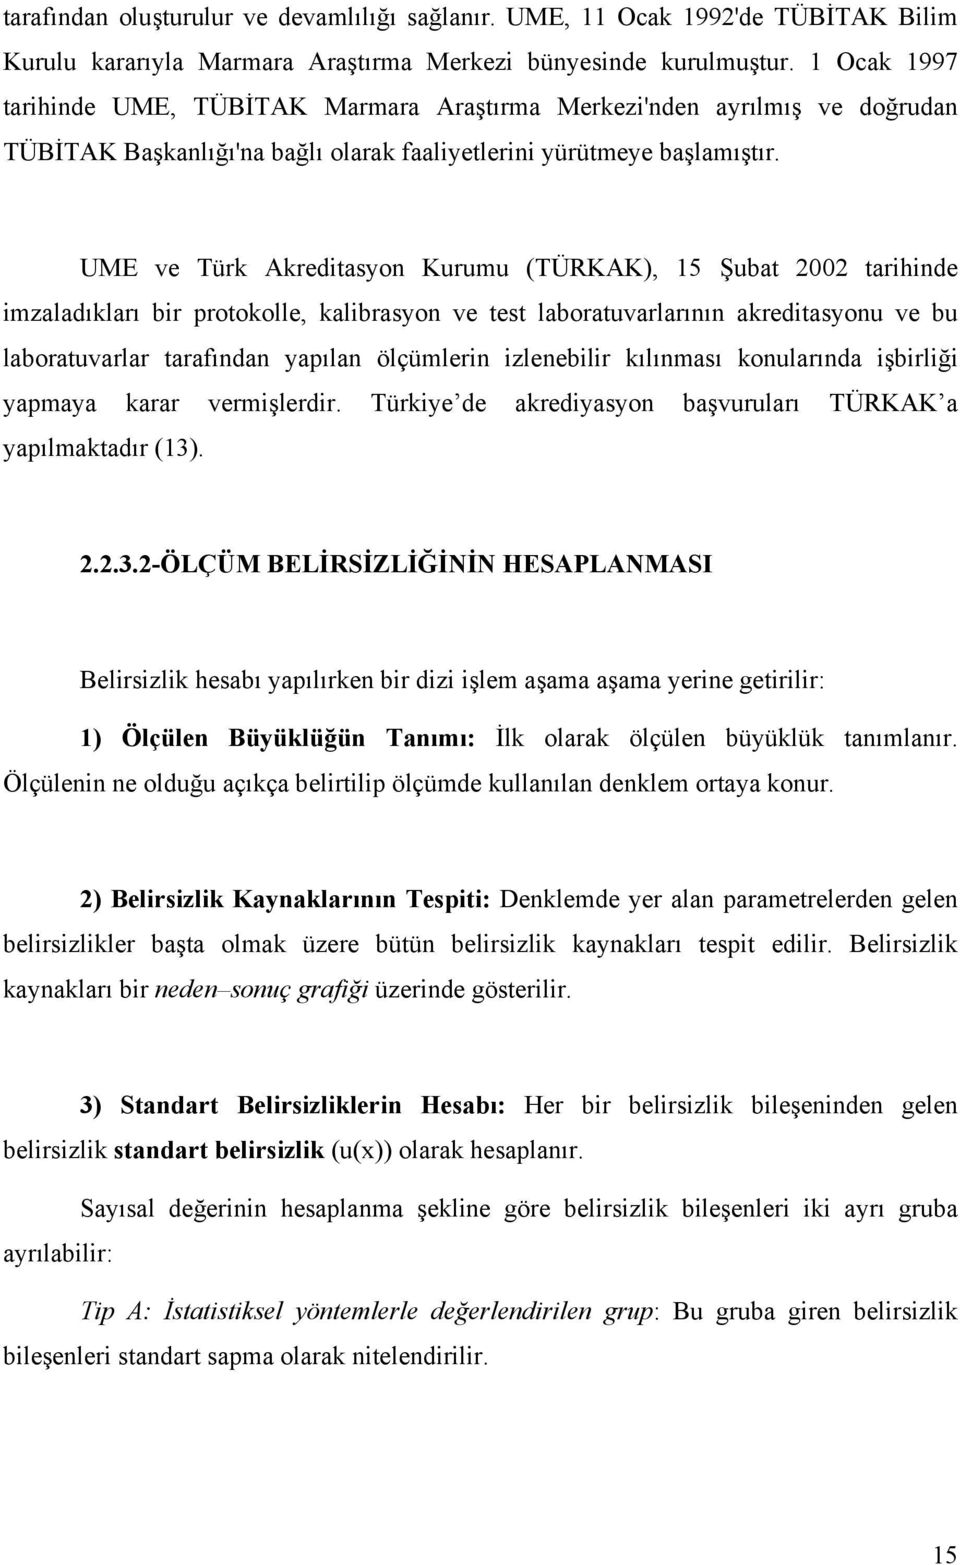 UME ve Türk Akreditasyon Kurumu (TÜRKAK), 15 Şubat 00 tarihinde imzaladıkları bir protokolle, kalibrasyon ve test laboratuvarlarının akreditasyonu ve bu laboratuvarlar tarafından yapılan ölçümlerin